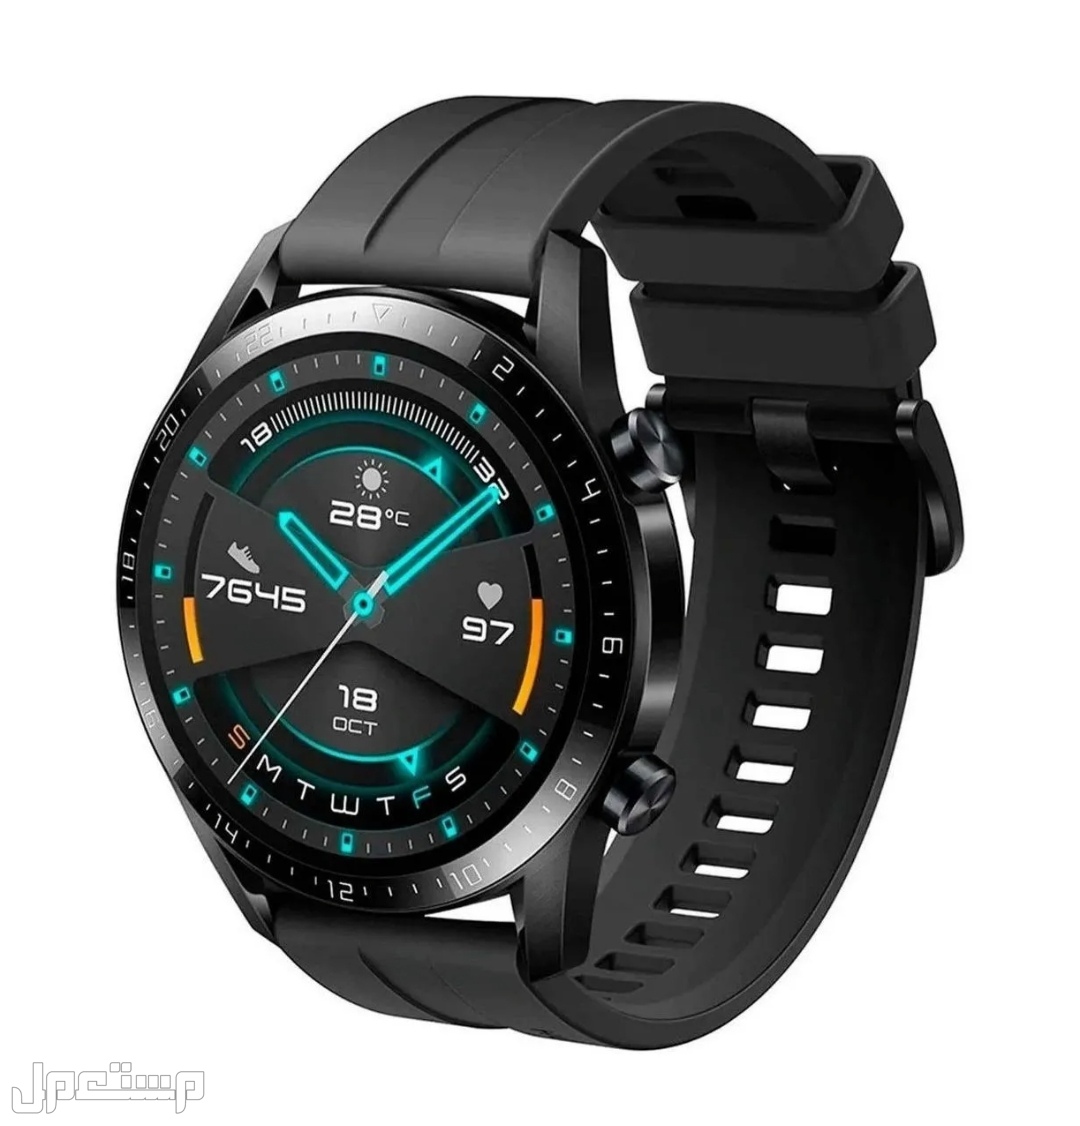 تعرف على أفضل ساعات ذكية للدراسة والعمل Huawei Watch GT 2 Sport 1.39 "46mm